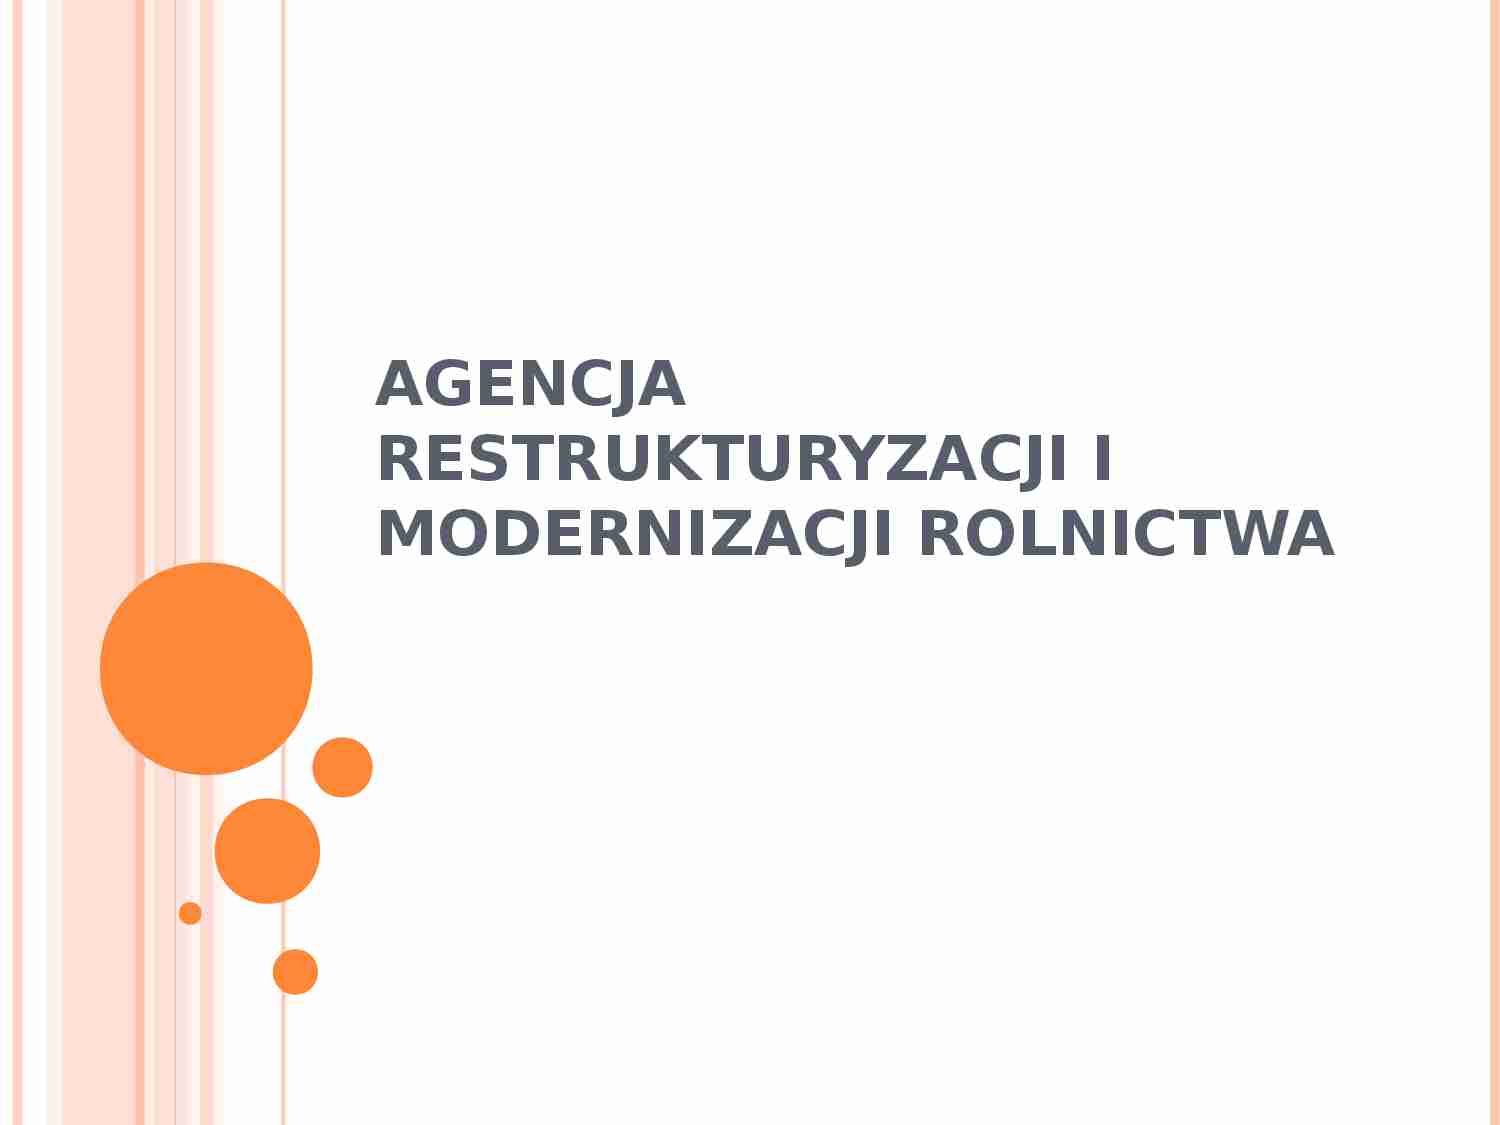 Agencja restrukturyzacji i modernizacji rolnictwa - prezentacja na